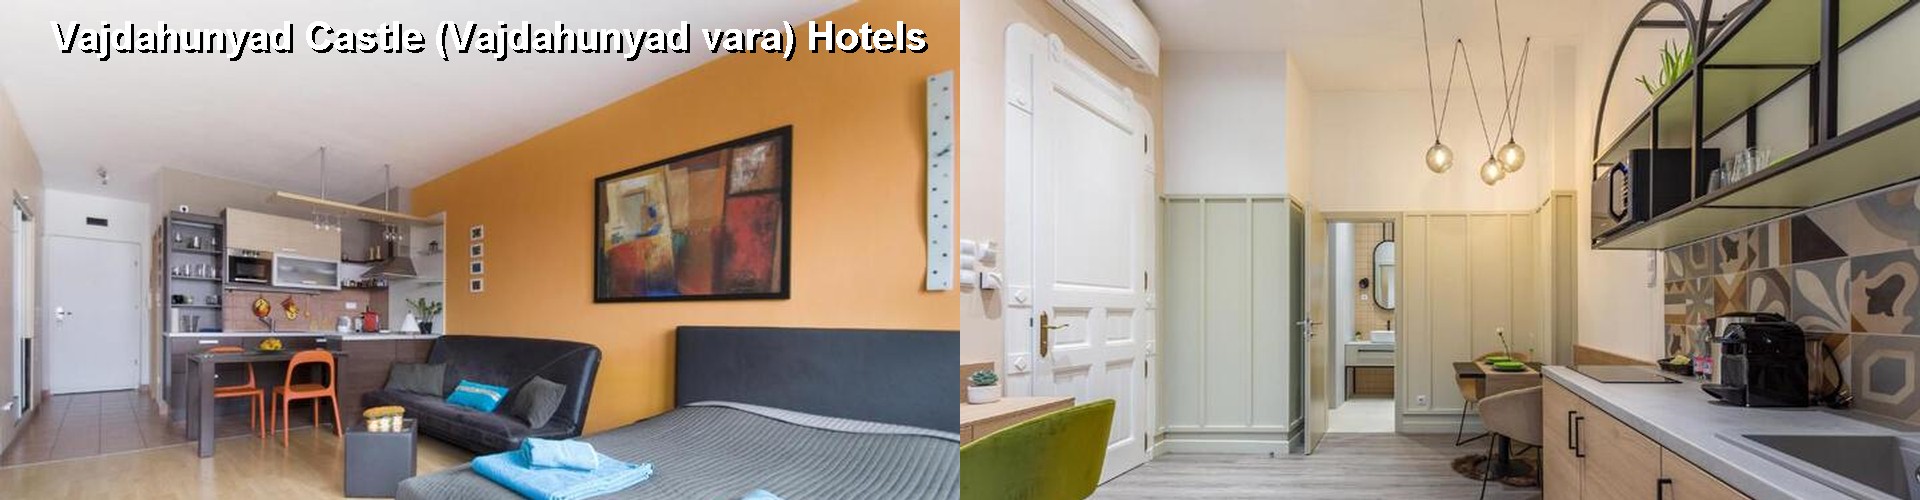 5 Best Hotels near Vajdahunyad Castle (Vajdahunyad vara)